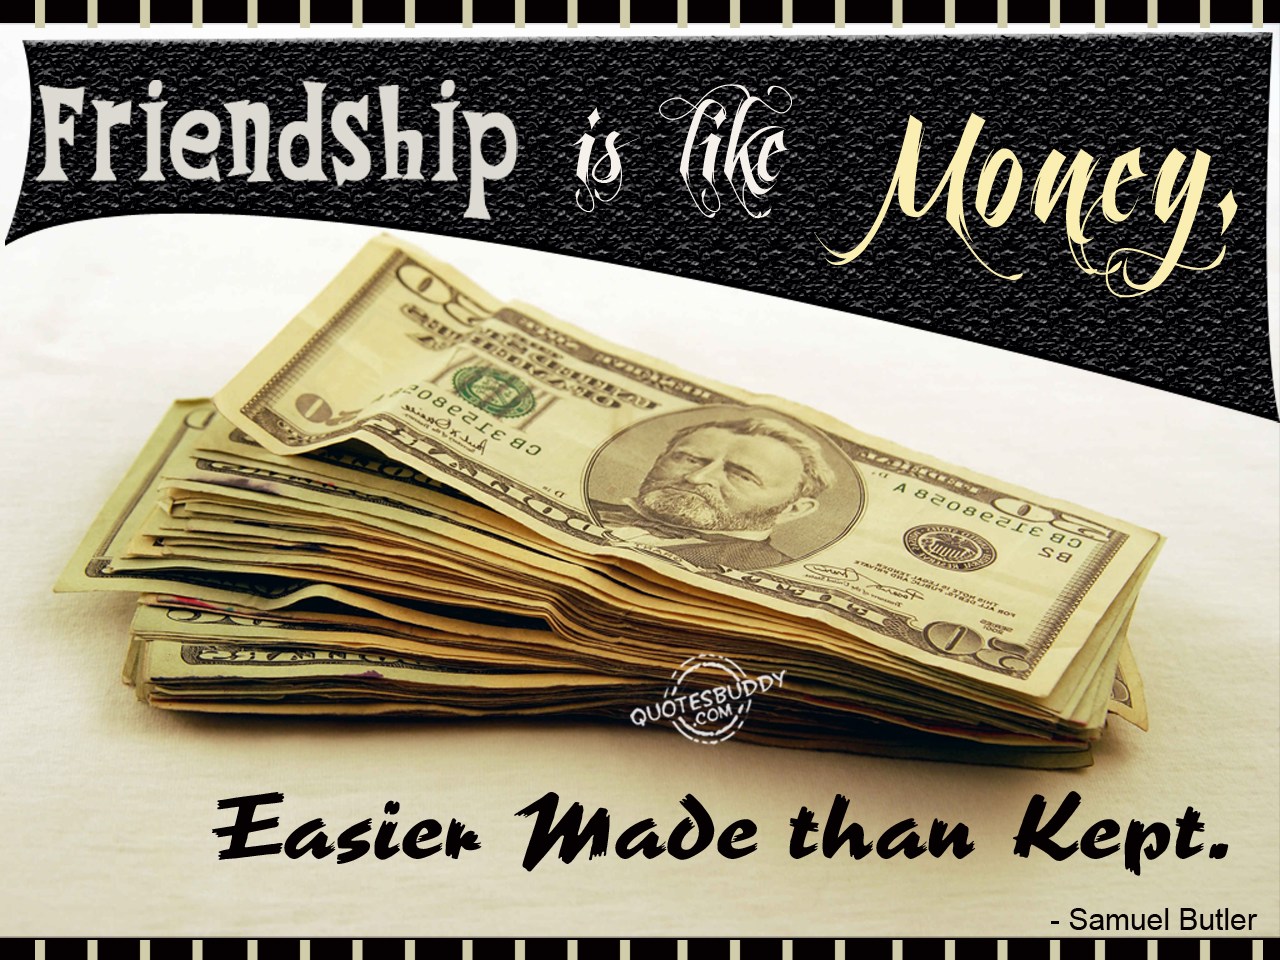 Friendship is like money easier made than kept. Samuel butler